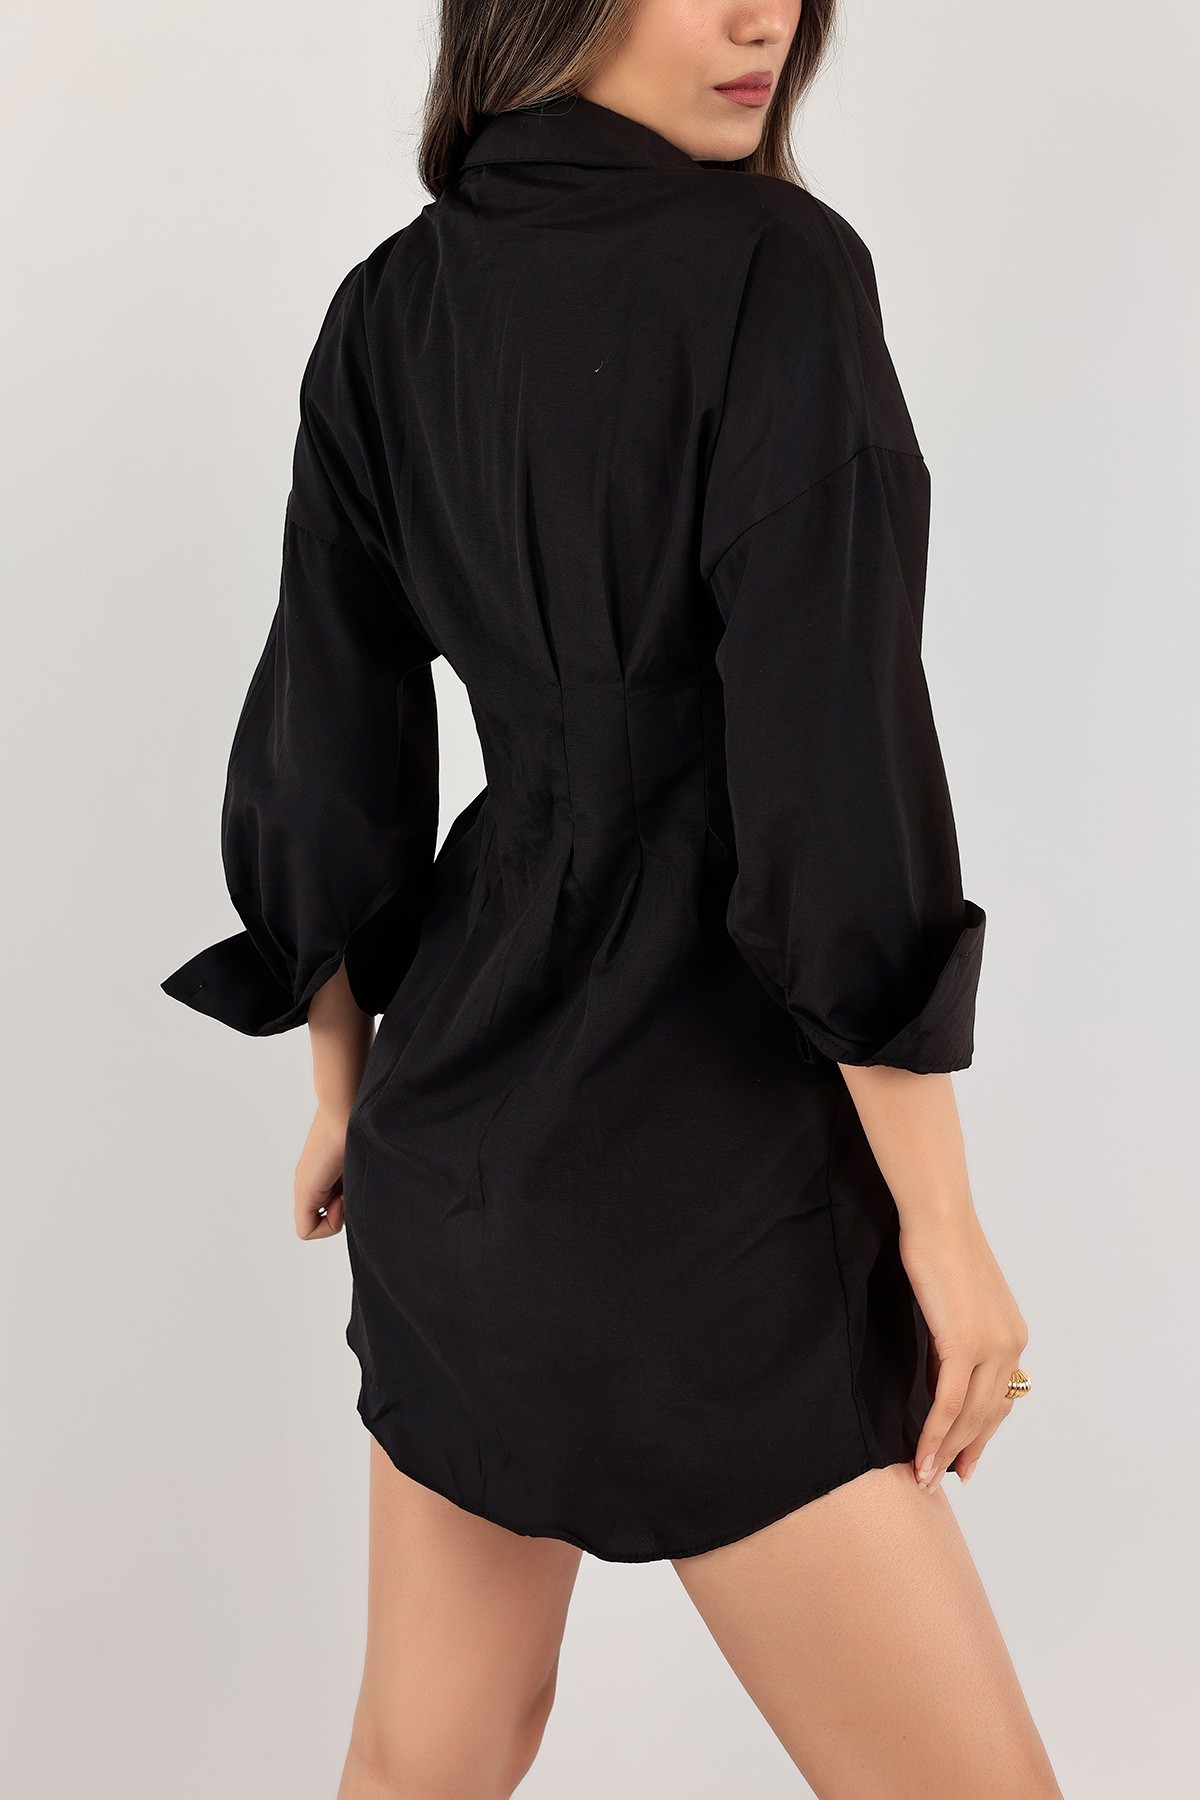 Siyah Pensli Poplin Gömlek Elbise 121547